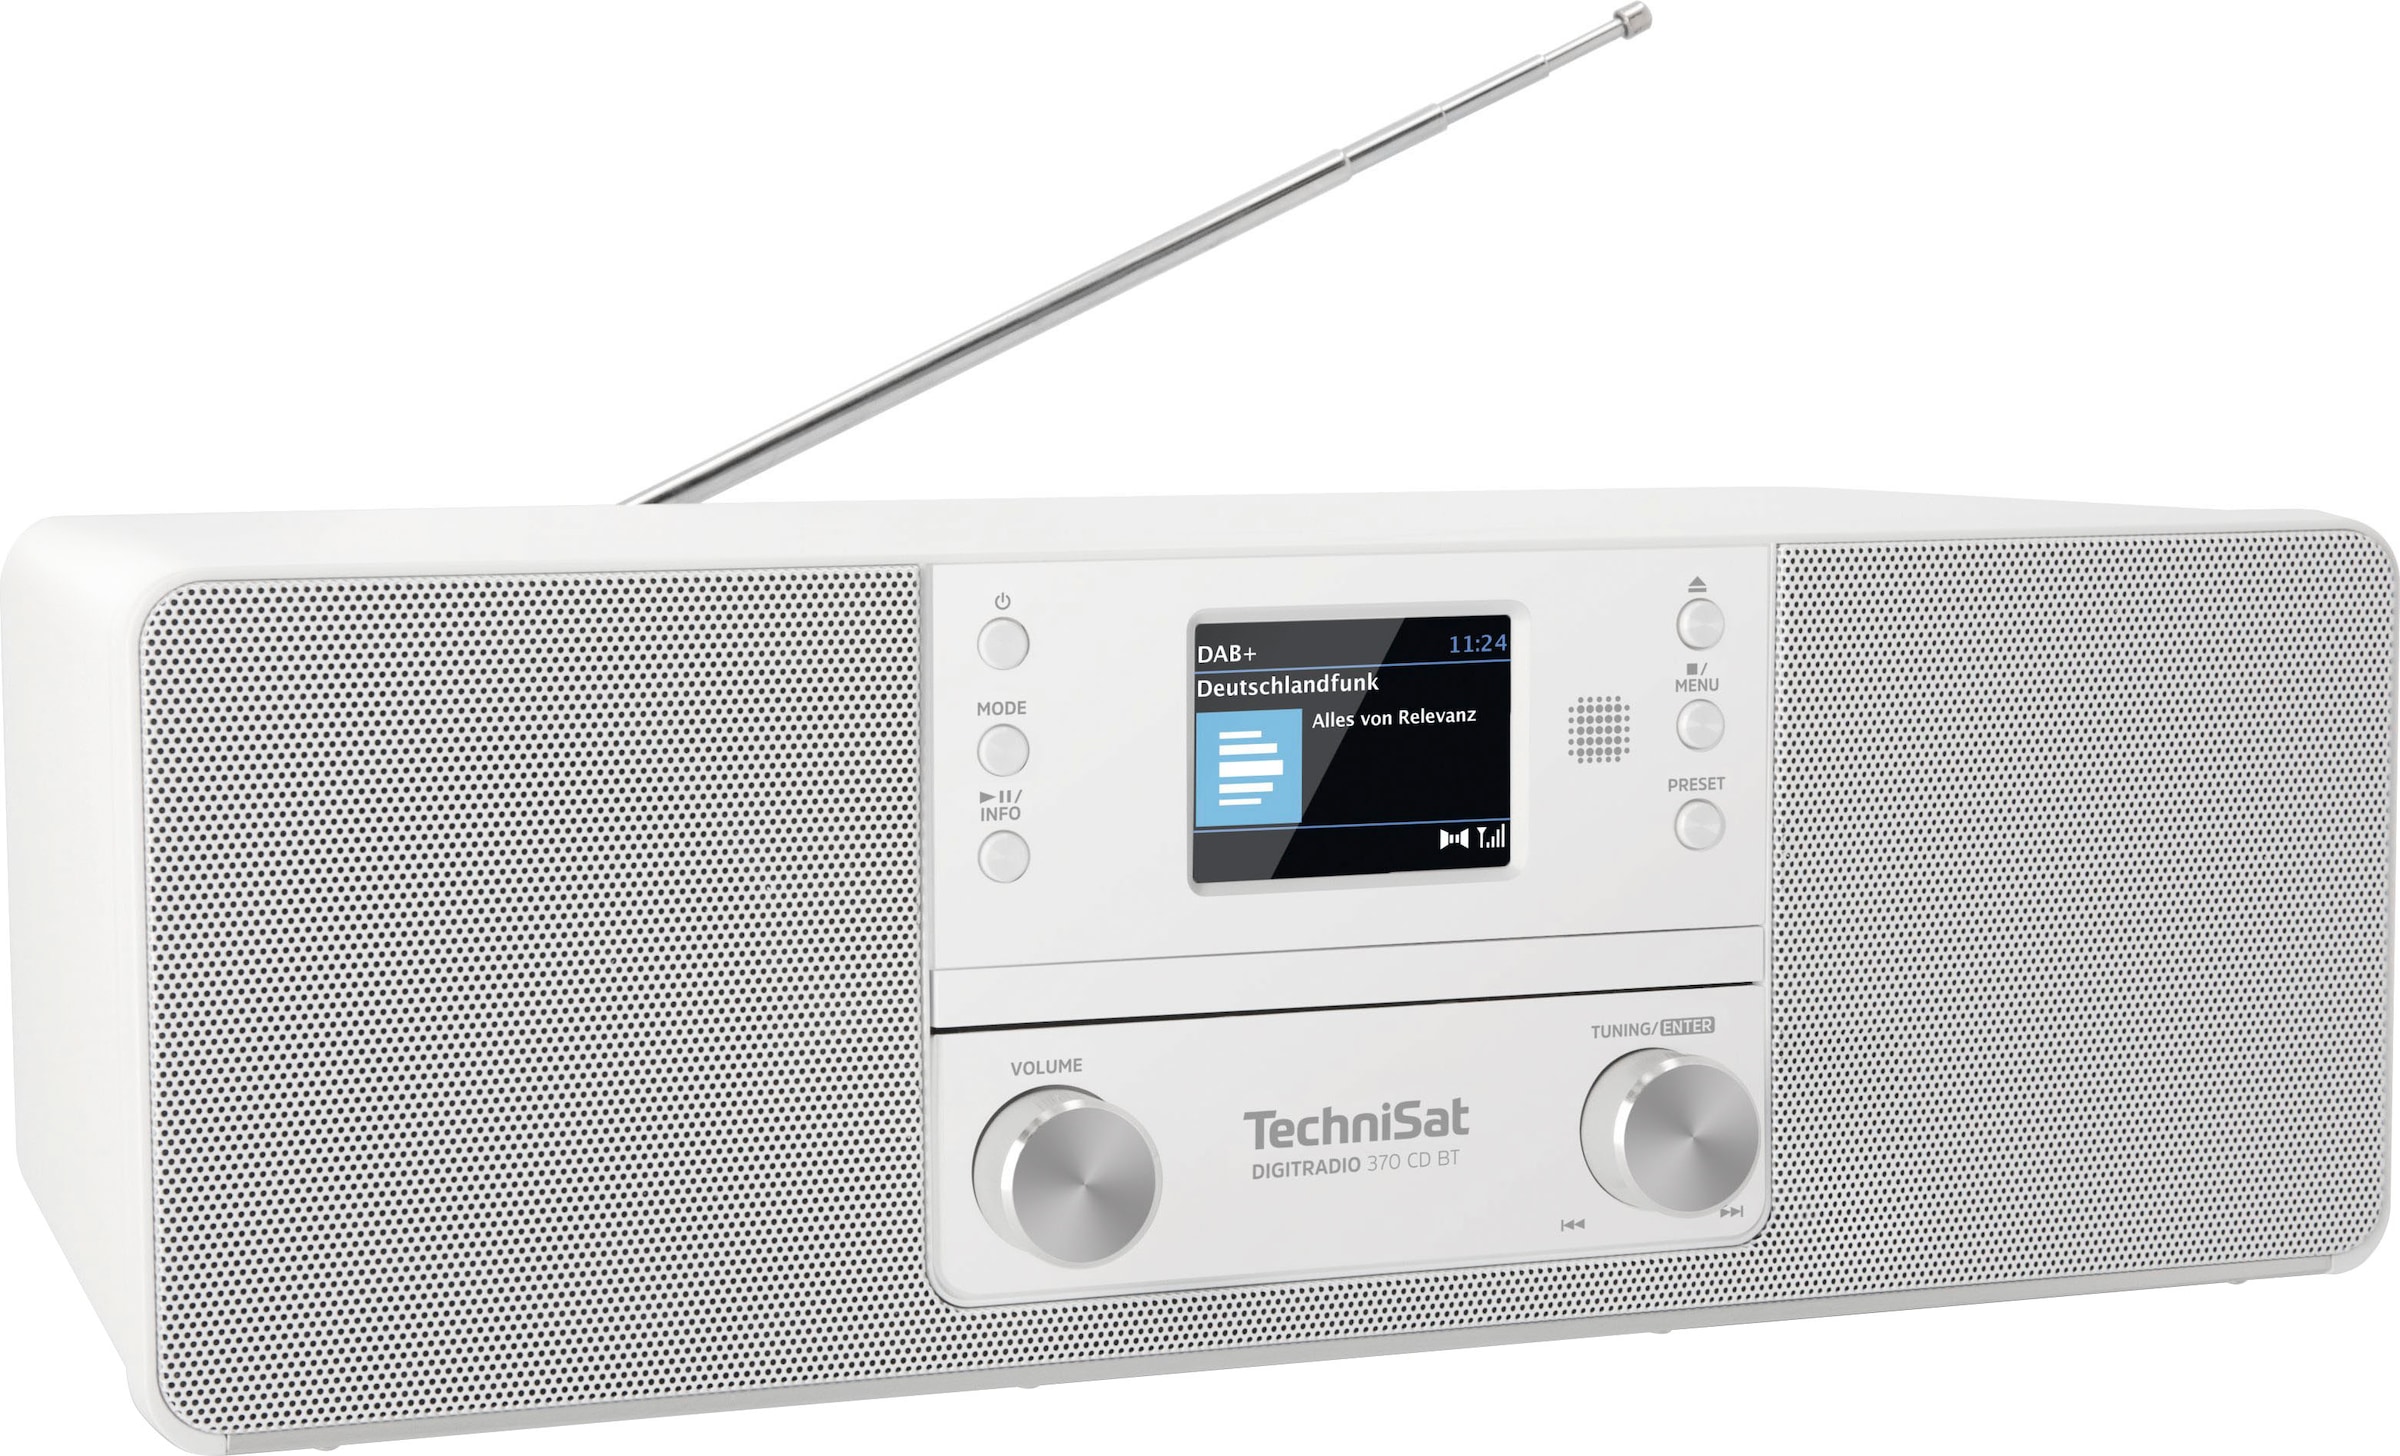 TechniSat Digitalradio (DAB+) »DIGITRADIO 370 CD BT«, (Bluetooth UKW mit RDS -Digitalradio (DAB+) 10 W) jetzt kaufen bei OTTO